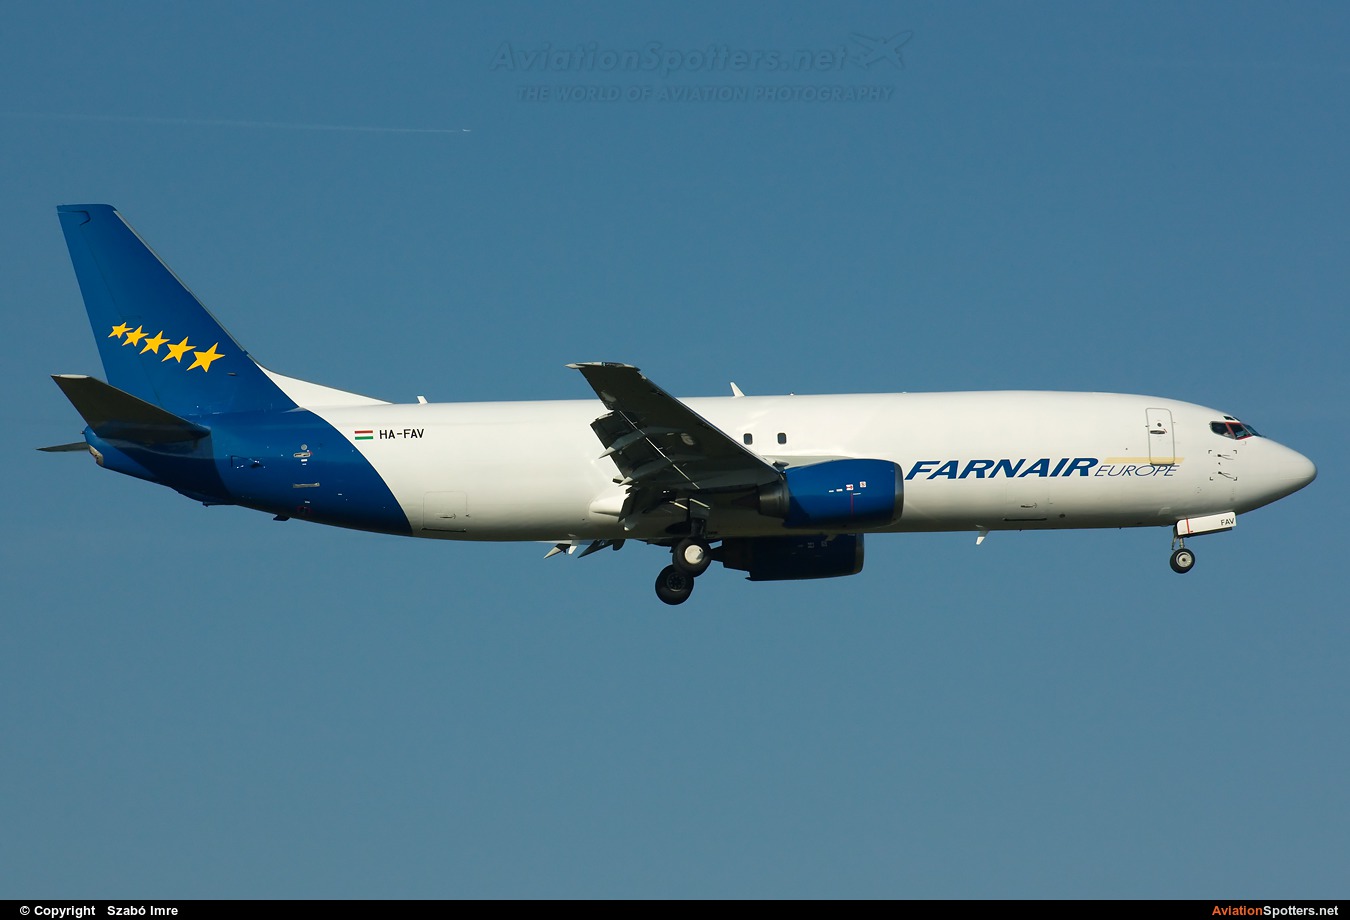 Farnair Europe  -  737-400F  (HA-FAV) By Szabó Imre (SzImre71)